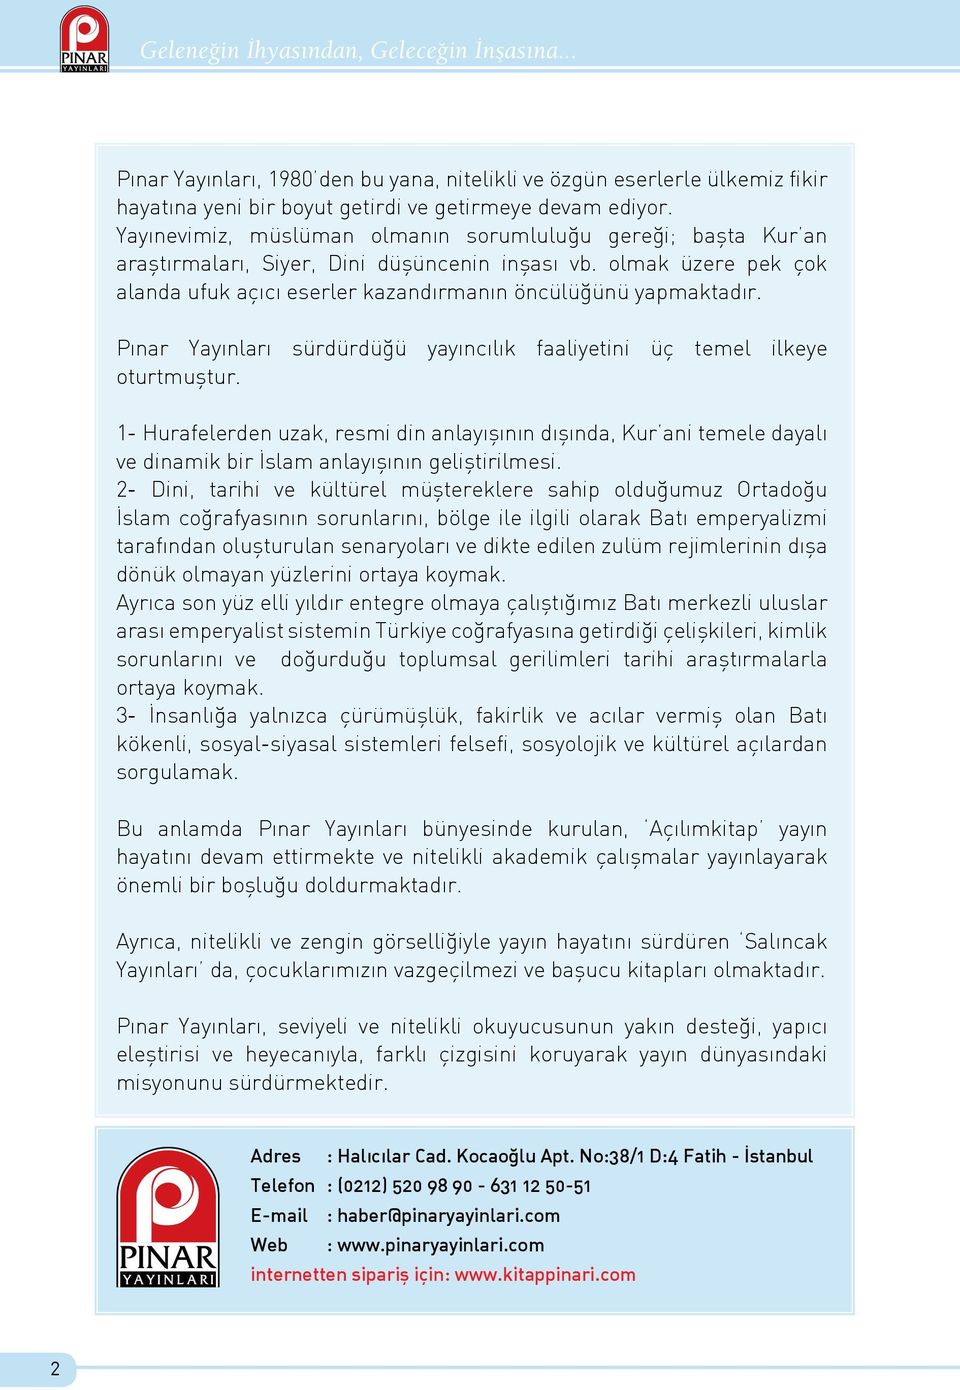 Pınar Yayınları sürdürdüğü yayıncılık faaliyetini üç temel ilkeye oturtmuştur.